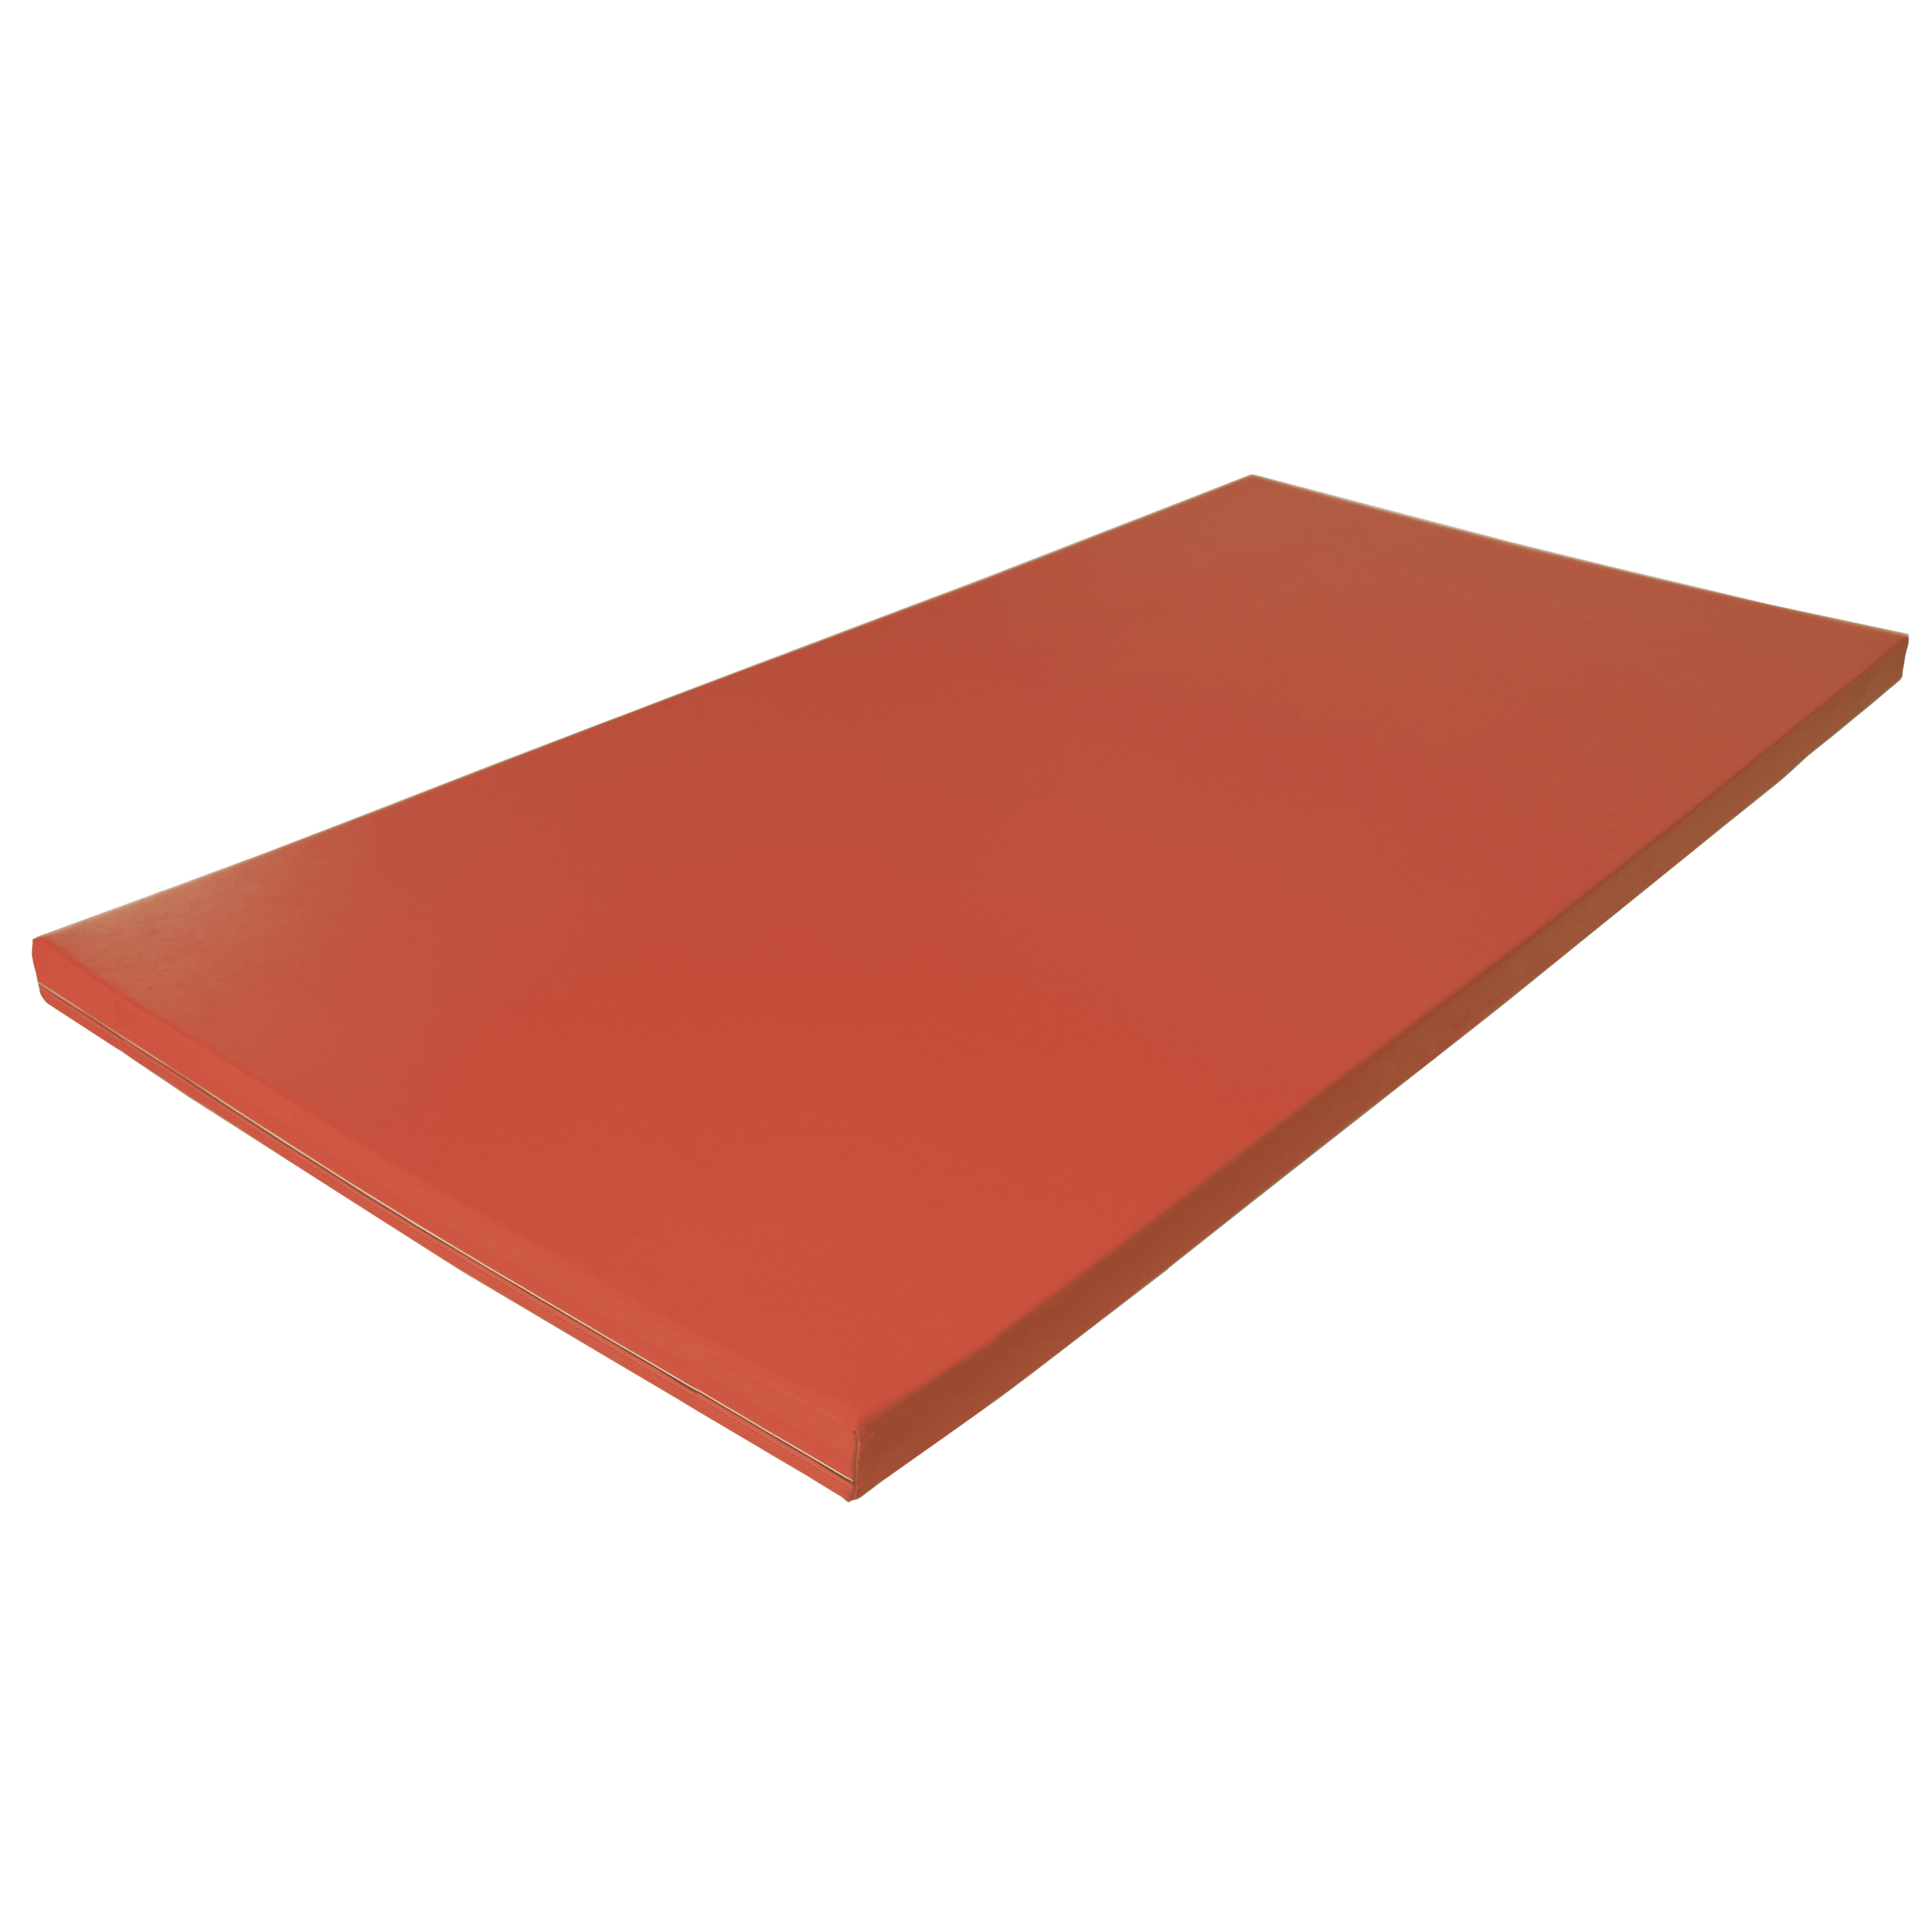 Fallschutzmatte Superleicht 'rot', 150 x 100 cm